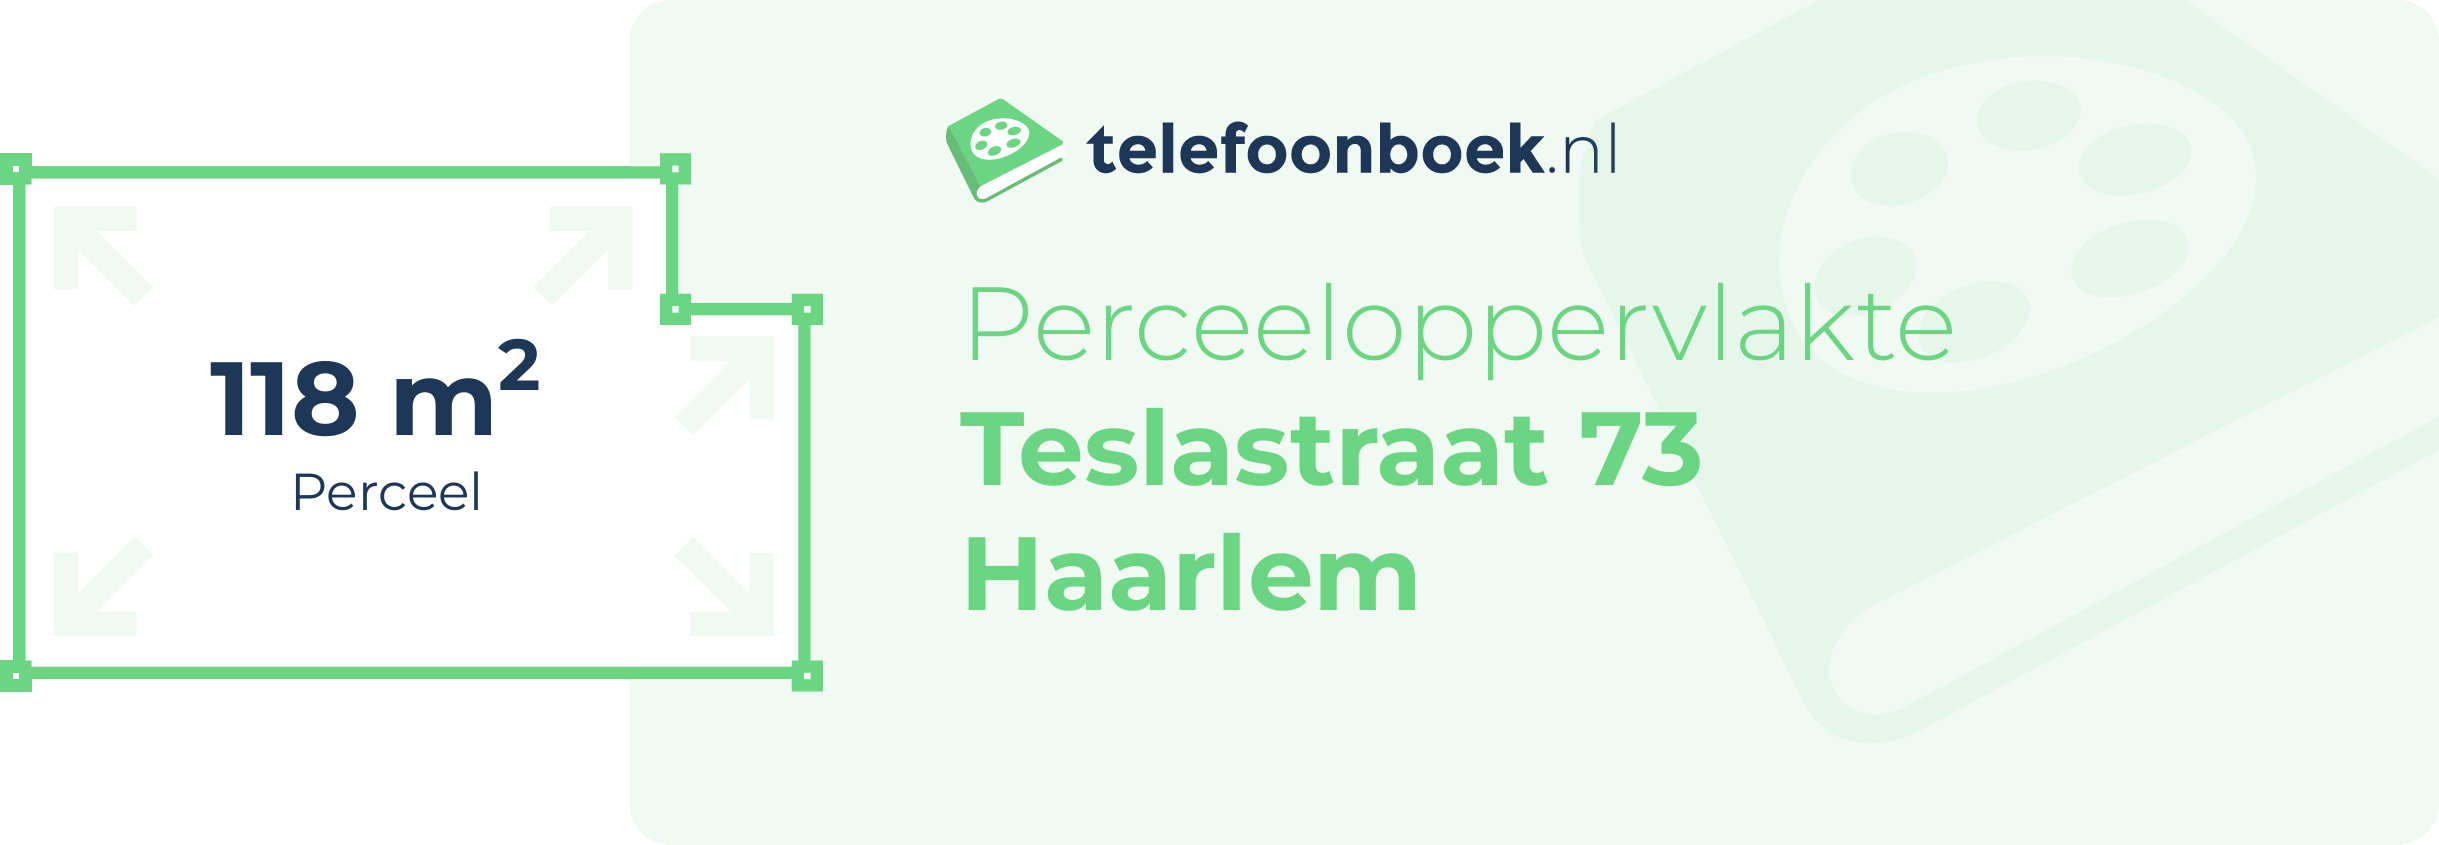 Perceeloppervlakte Teslastraat 73 Haarlem